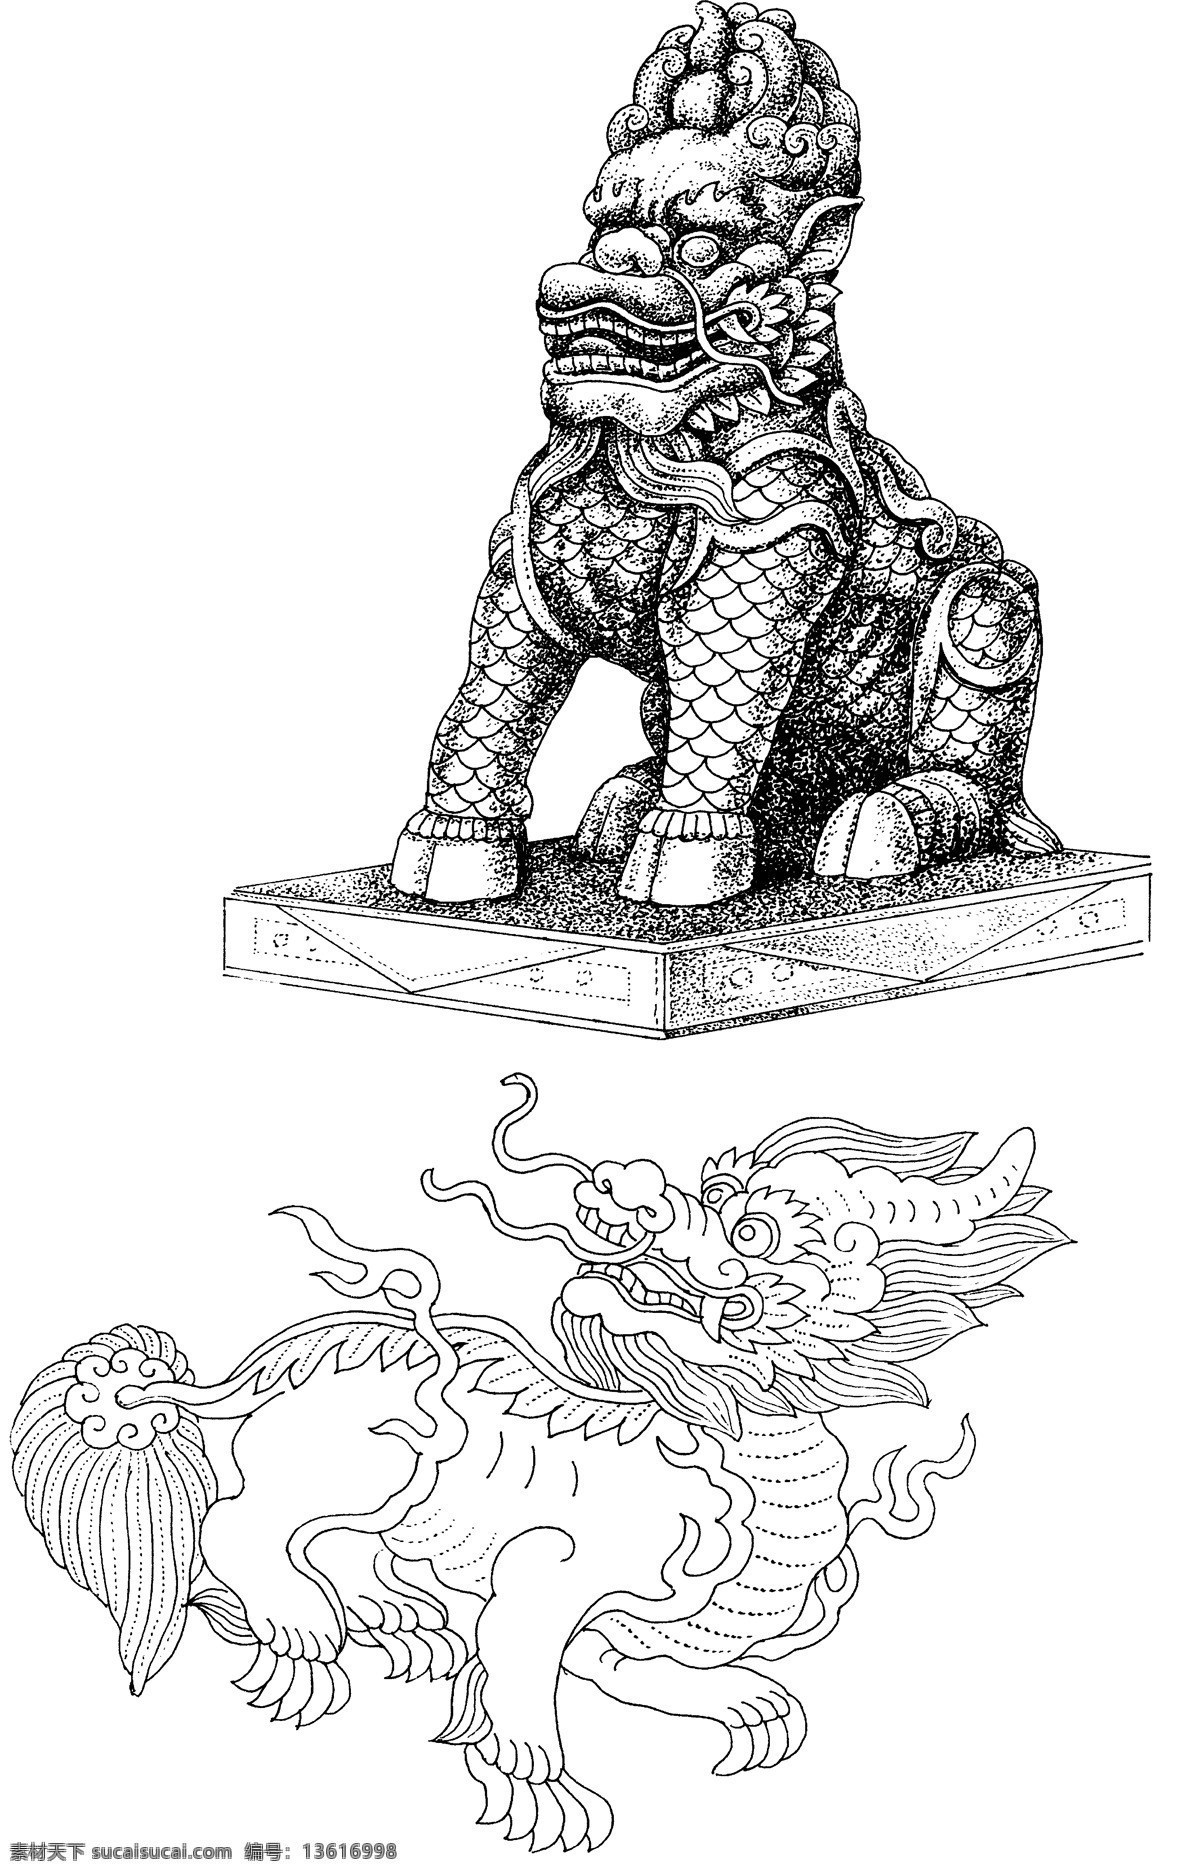 传说 中 龙生九子 之一 狻猊 狮子 喜烟 好坐 石雕 传统文化 吉祥 图 文化艺术